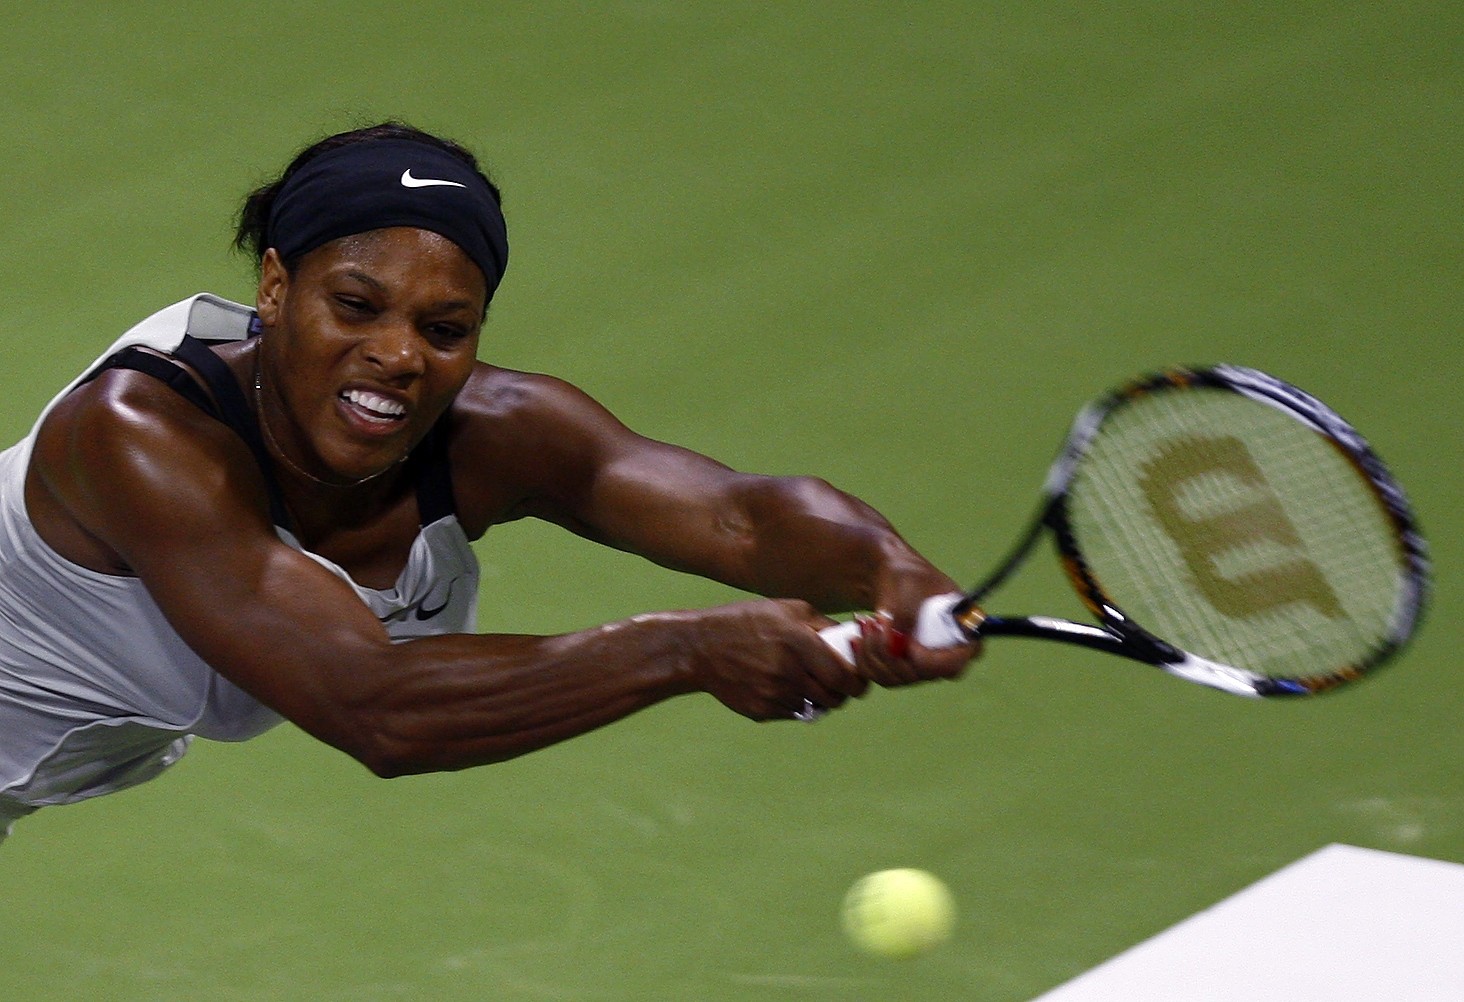 Serena estreou nesta quarta-feira com vitória tranquila sobre a russa Dinara Safina (Foto: Arquivo)